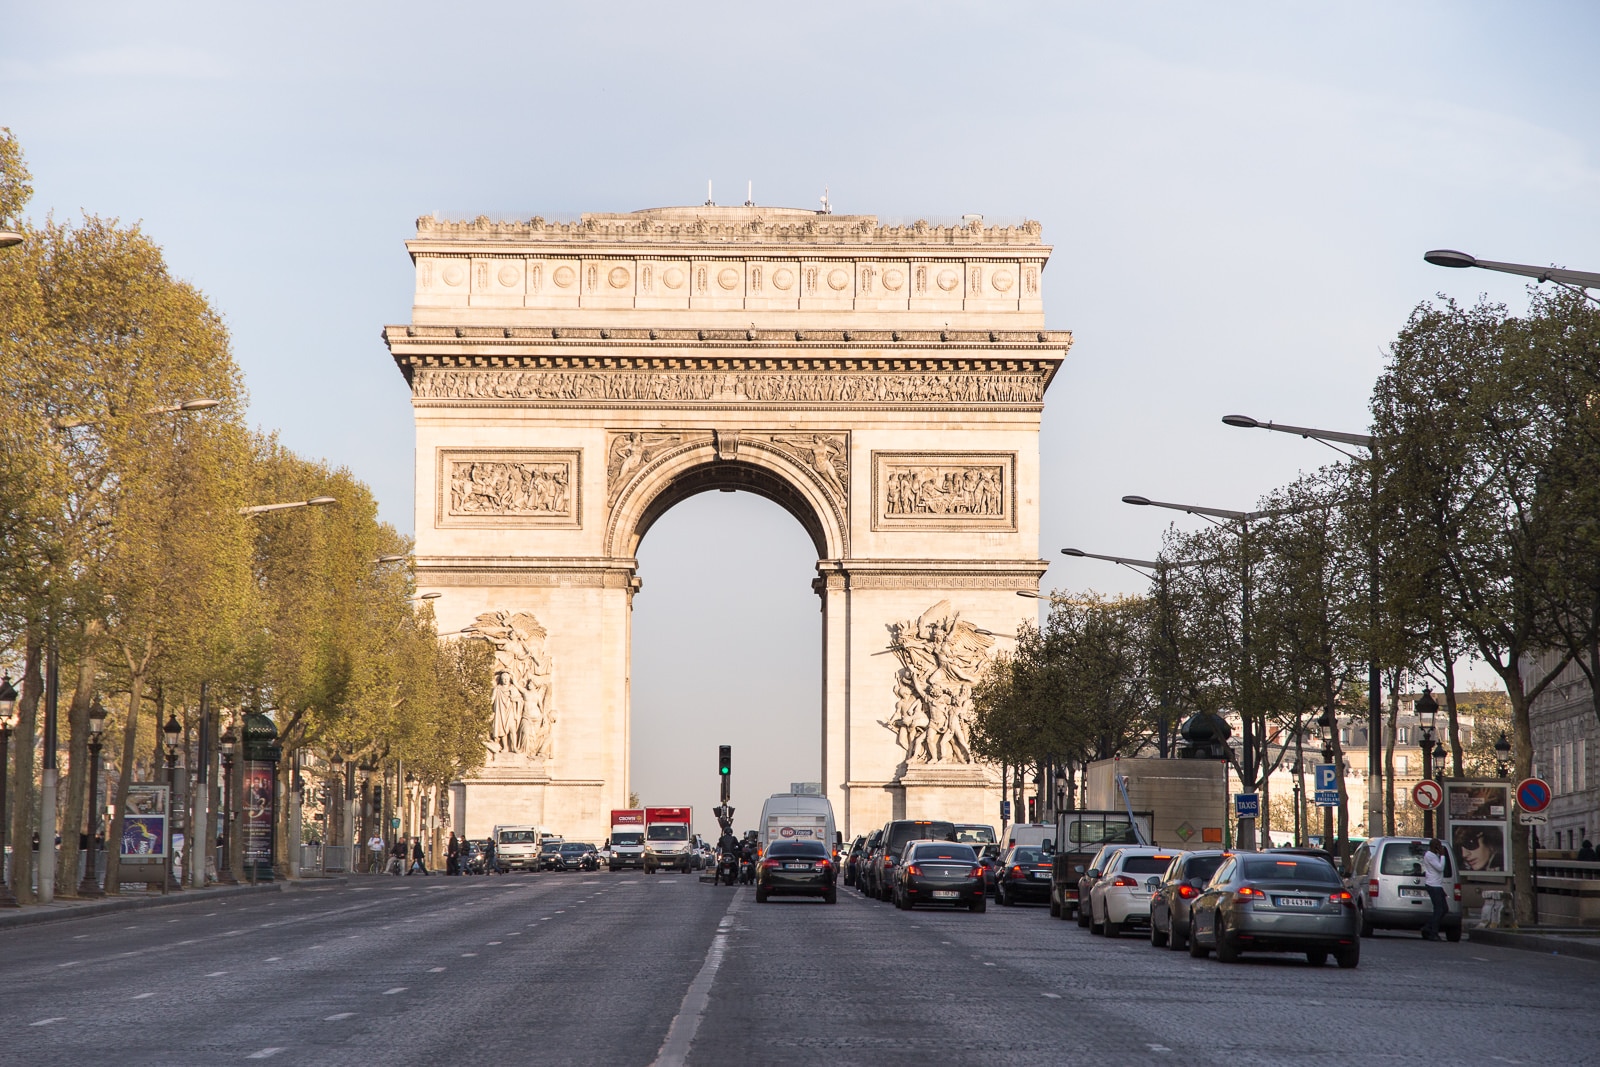 Städtereise nach Paris – So sieht der perfekte Tag aus!